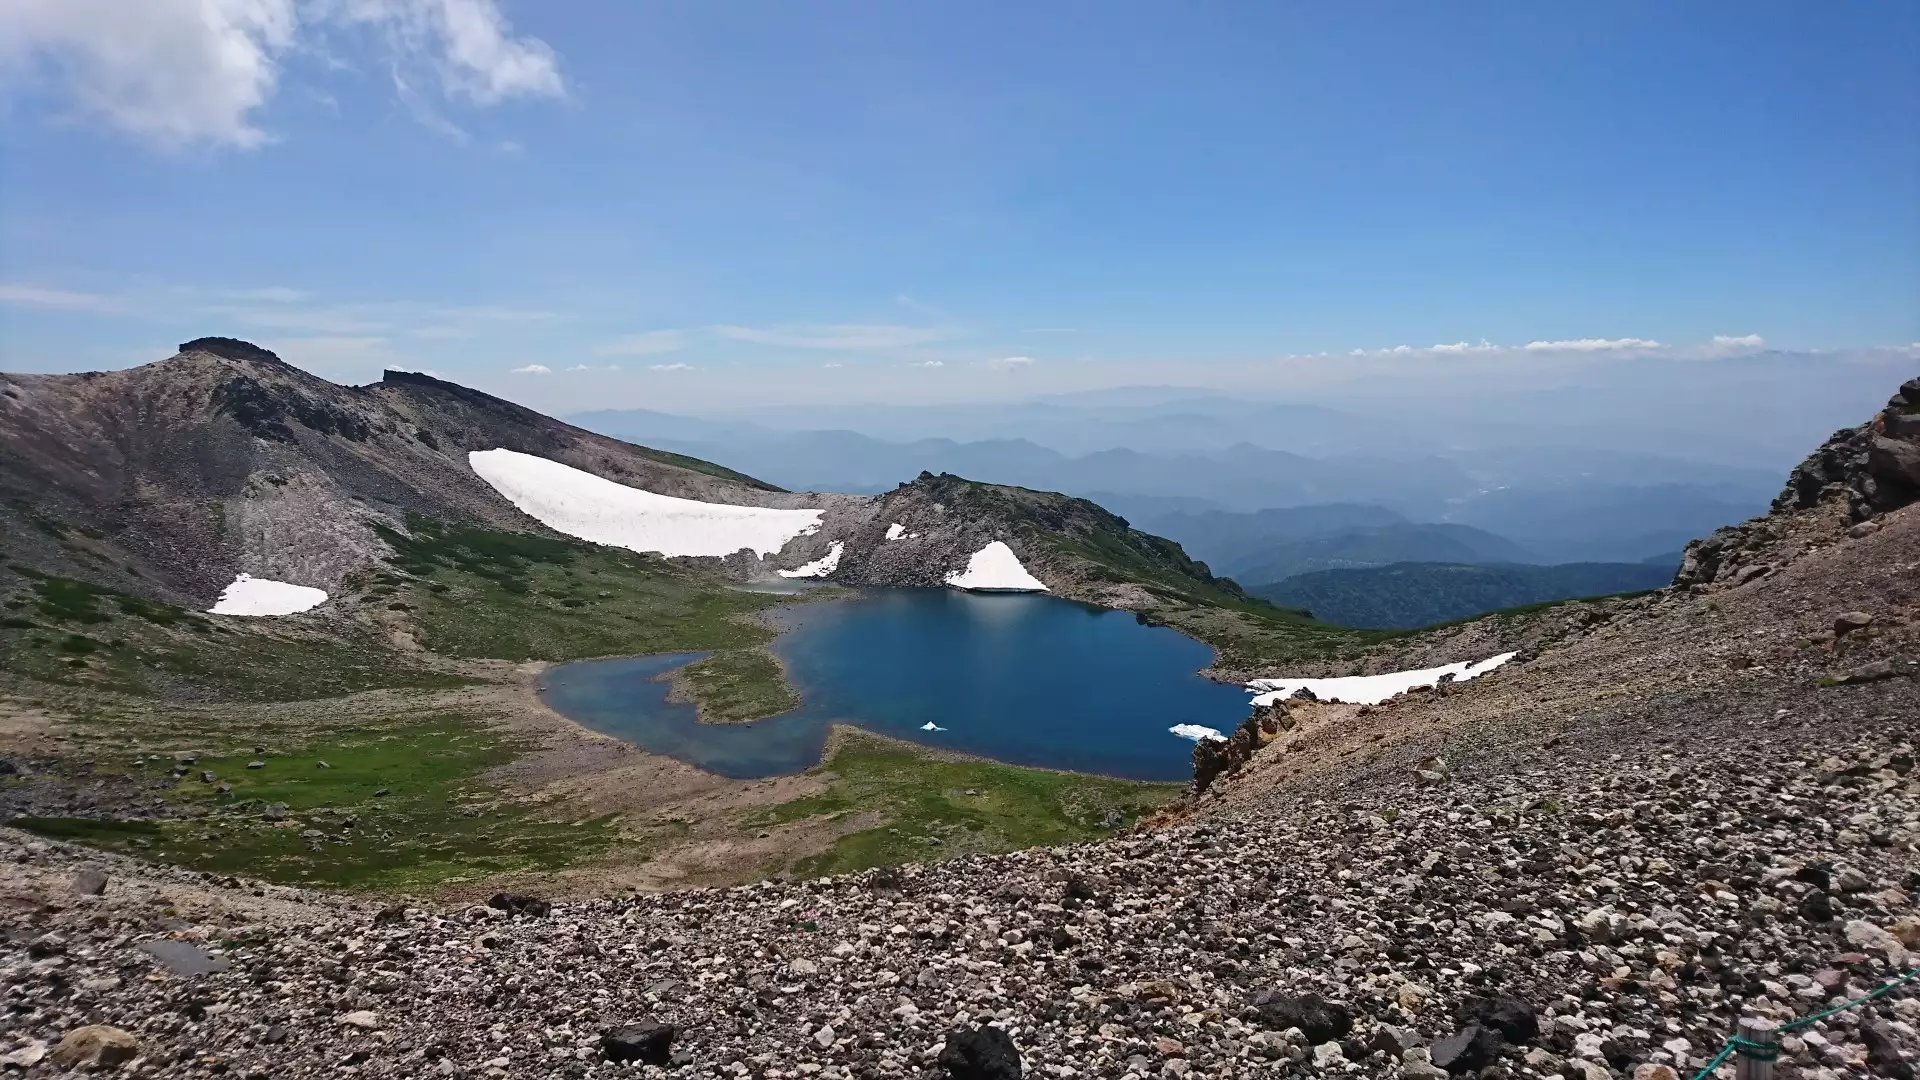 猛暑を逃れて登った乗鞍岳は 爽やかな暑さだった でも日差しは強烈 イッセイさんの乗鞍岳の活動データ Yamap ヤマップ